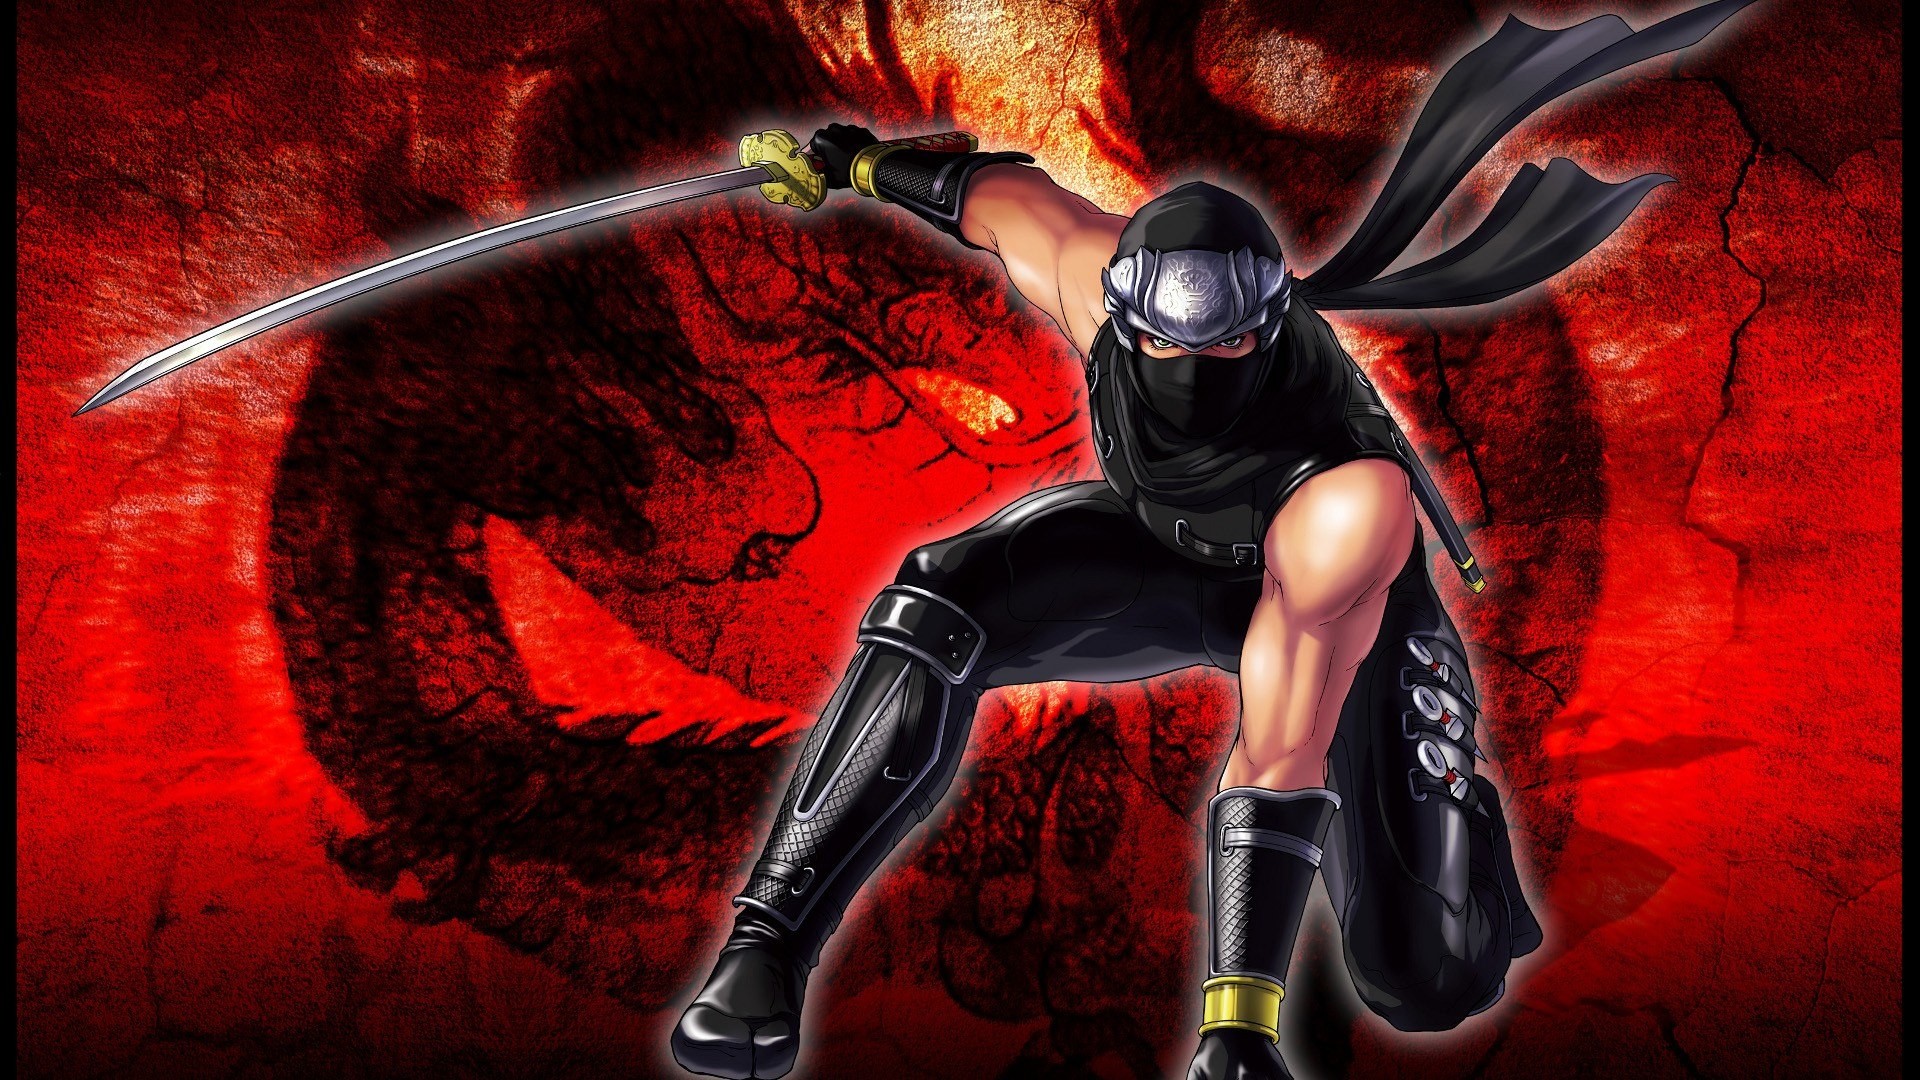 fondo de pantalla de ninja gaiden,juego de acción y aventura,demonio,cg artwork,personaje de ficción,ilustración